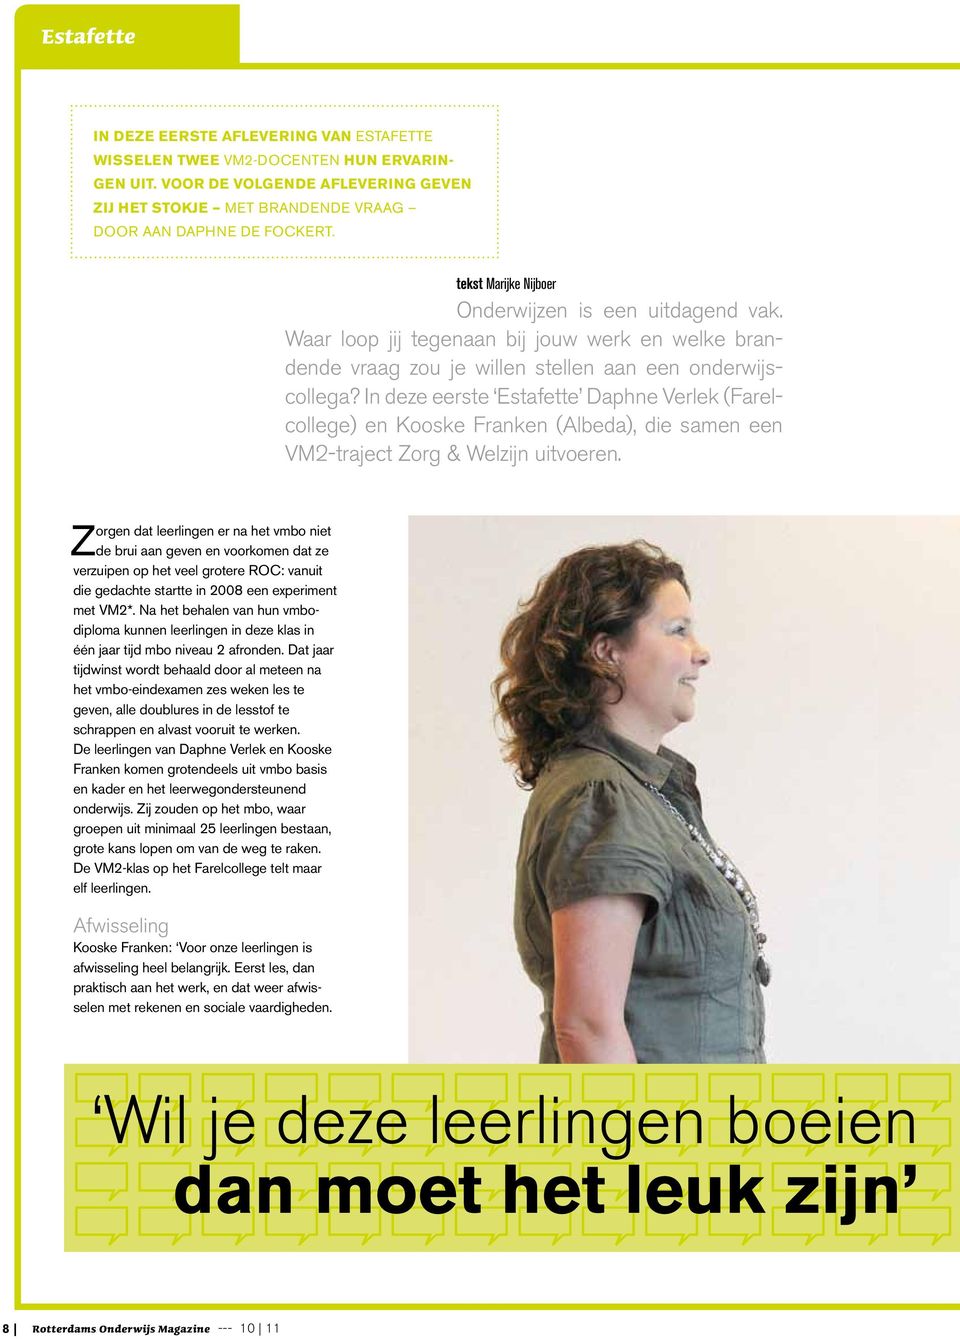 In deze eerste Estafette Daphne Verlek (Farelcollege) en Kooske Franken (Albeda), die samen een VM2-traject Zorg & Welzijn uitvoeren.